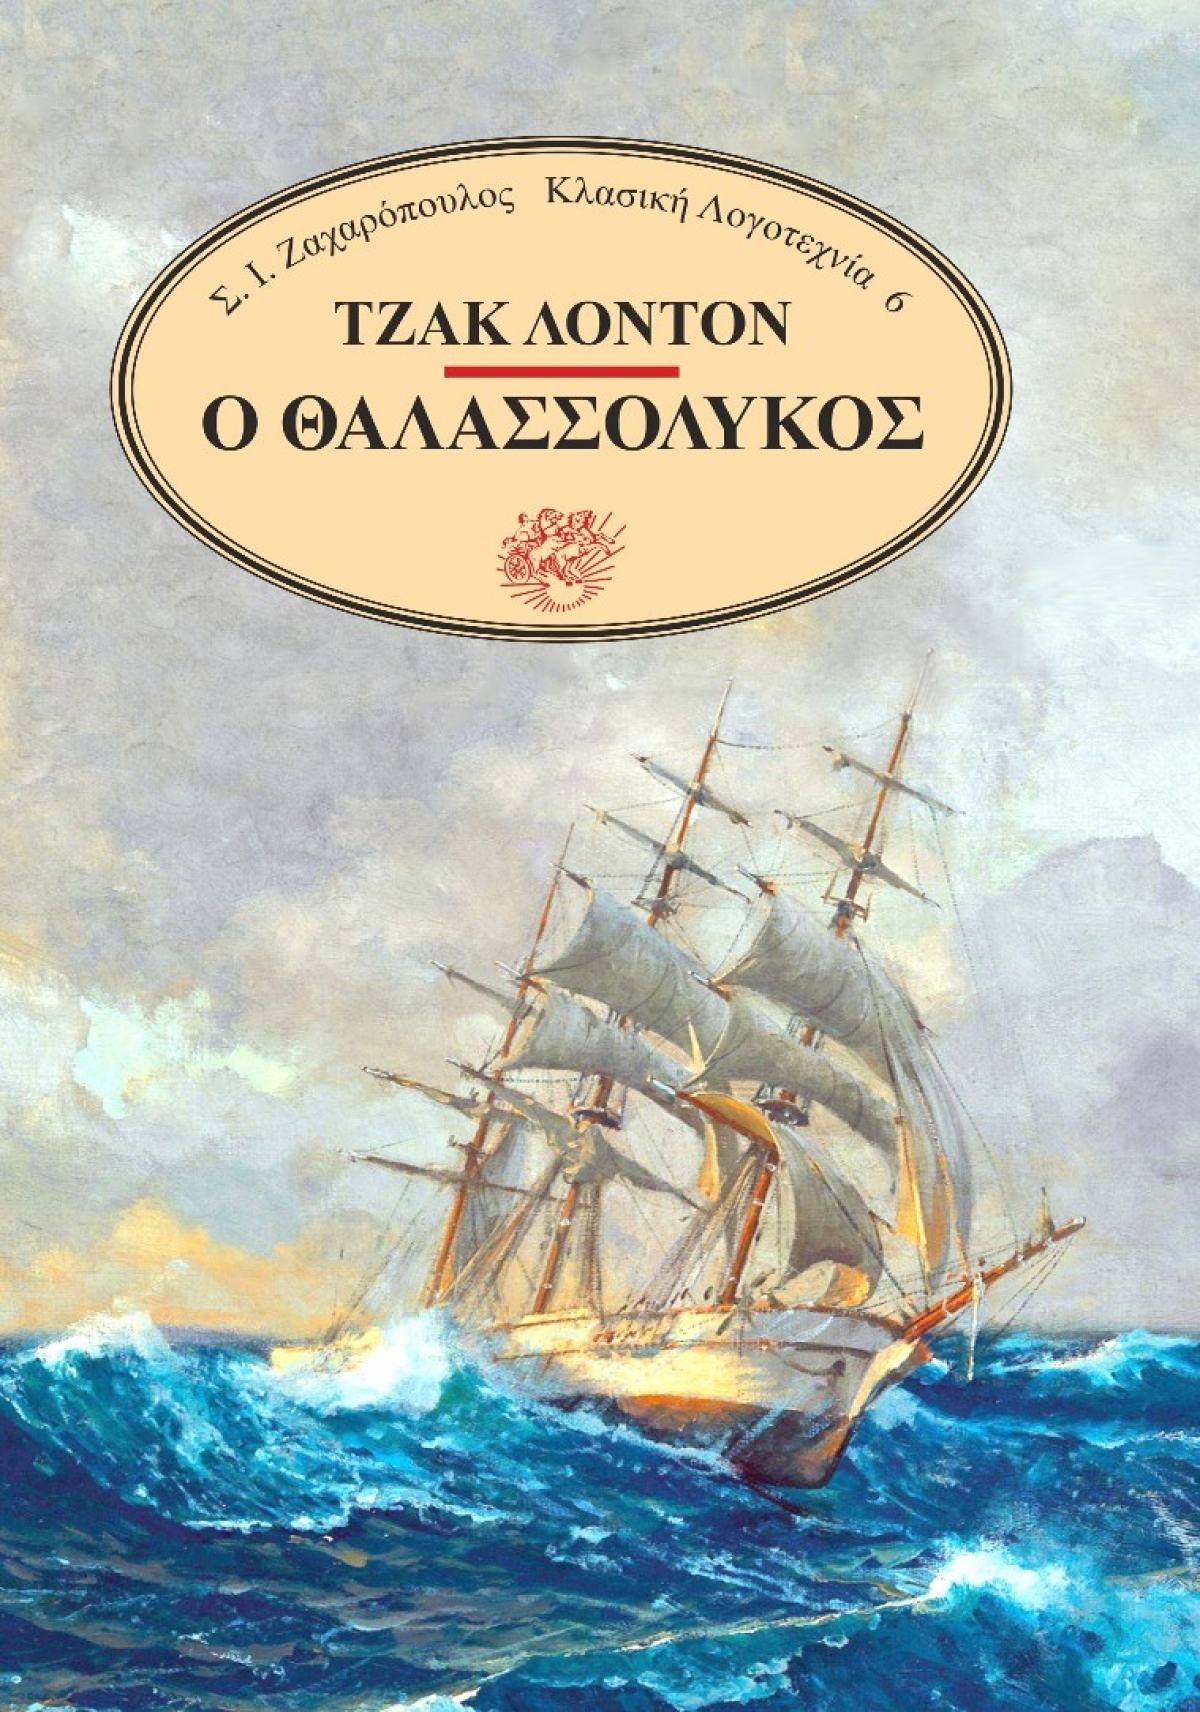 «Ο θαλασσόλυκος», το βιβλίο του Τζακ Λόντον, κυκλοφόρησε από τις Εκδόσεις Σ.Ι. Ζαχαρόπουλος!